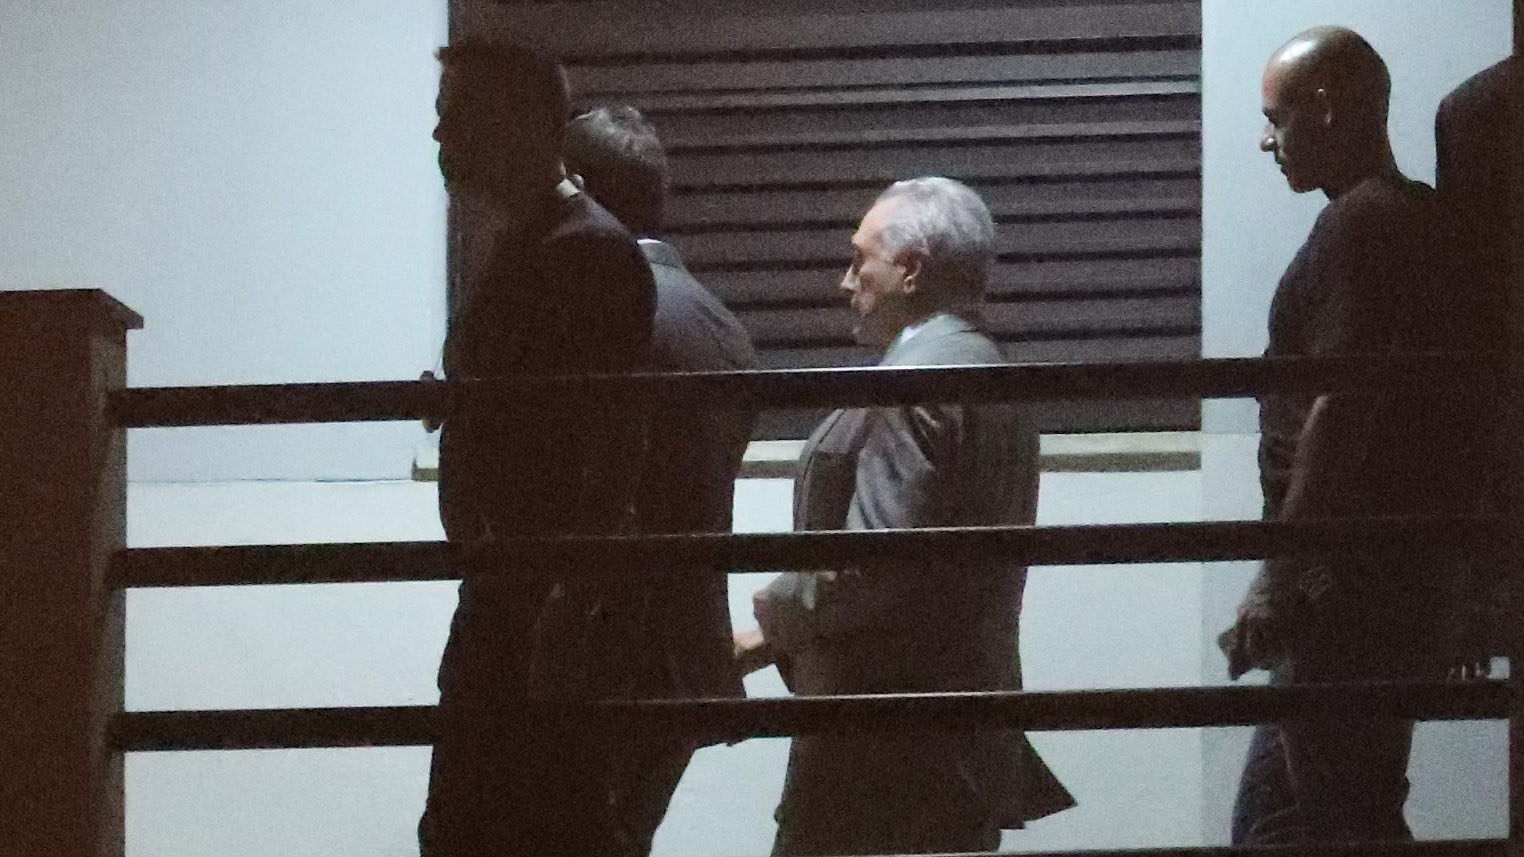 Michel Temer se mantiene en silencio durante interrogatorio tras ser detenido